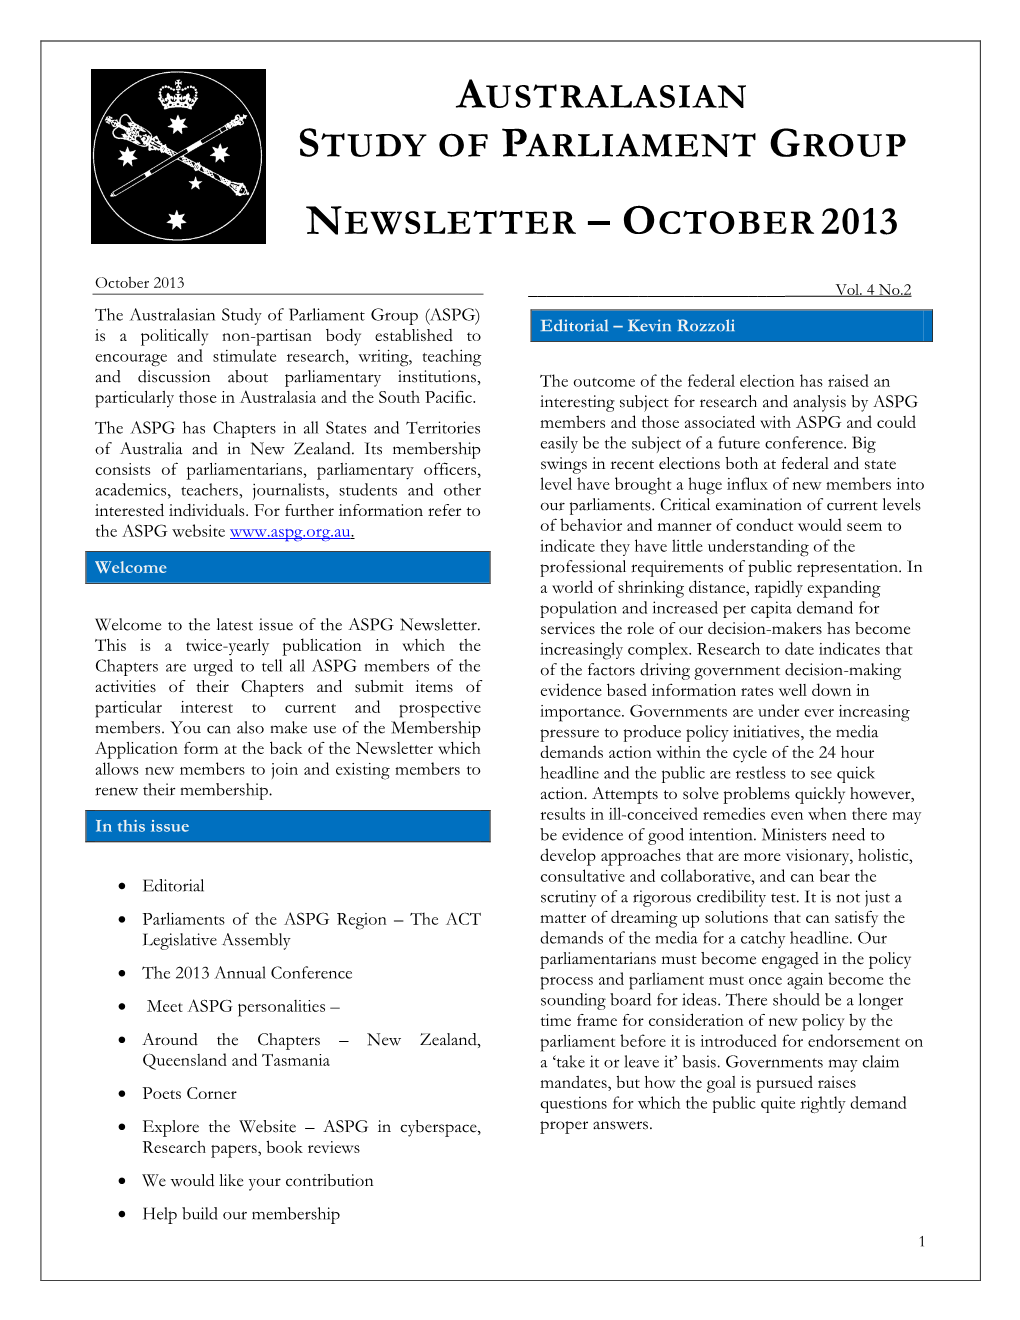 Newsletter (October 2013)